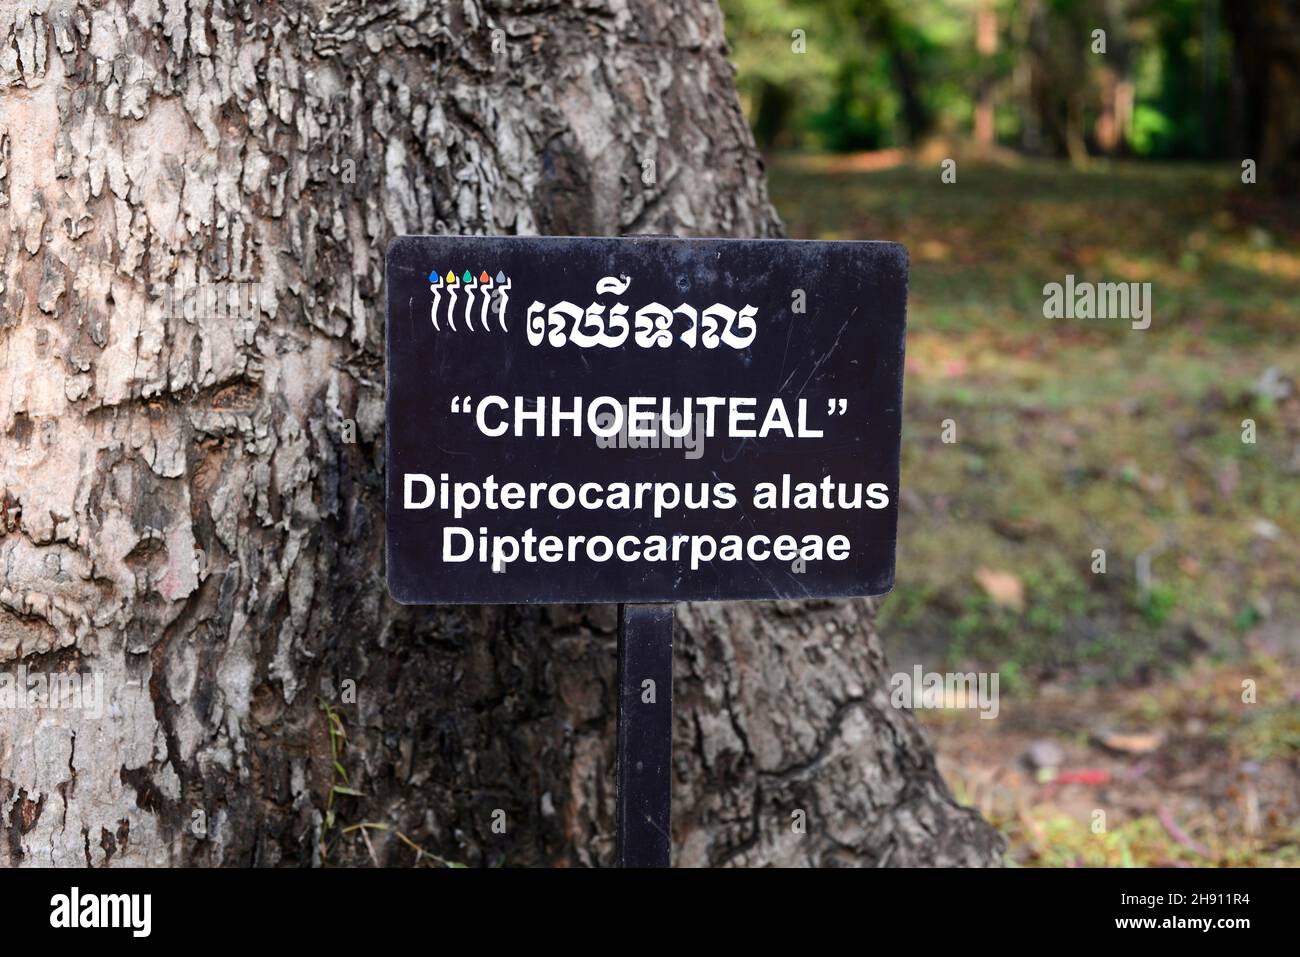 L'albero di resina (Dipterocarpus alatus) è un albero sempreverde originario dell'Asia meridionale. Questa foto è stata scattata a Siem Reap, Cambogia. Foto Stock